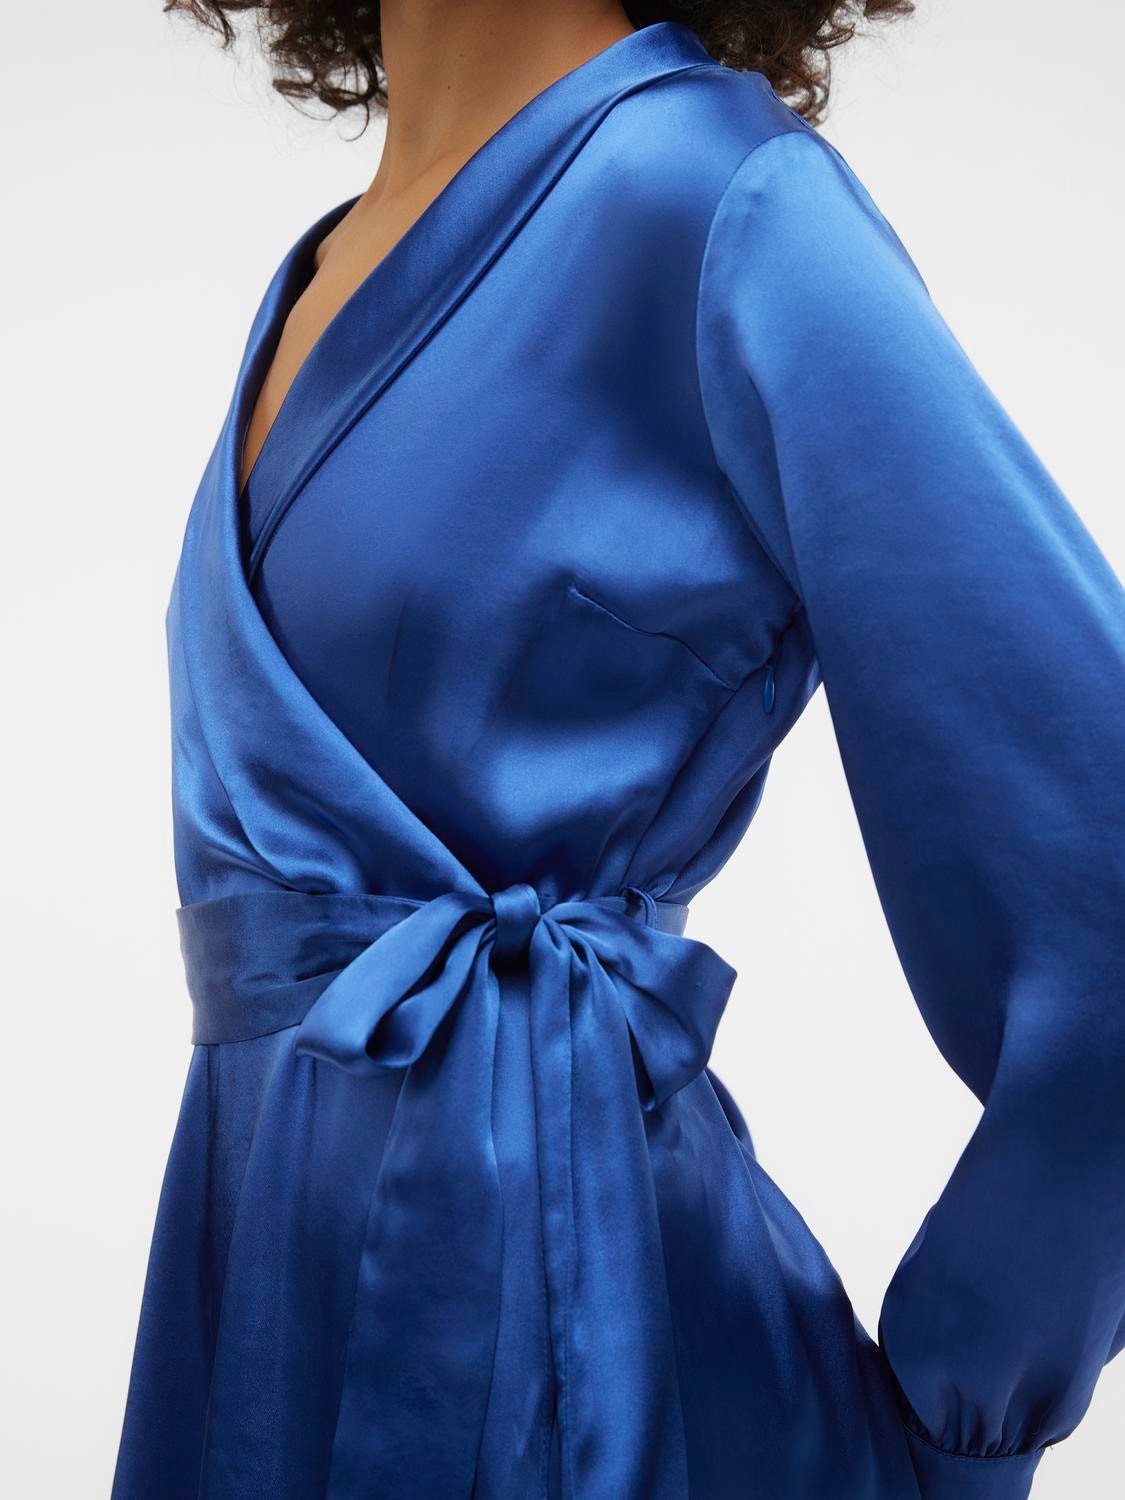 Vero Moda VMBEATRICE Kort klänning -Galaxy Blue - 10298381